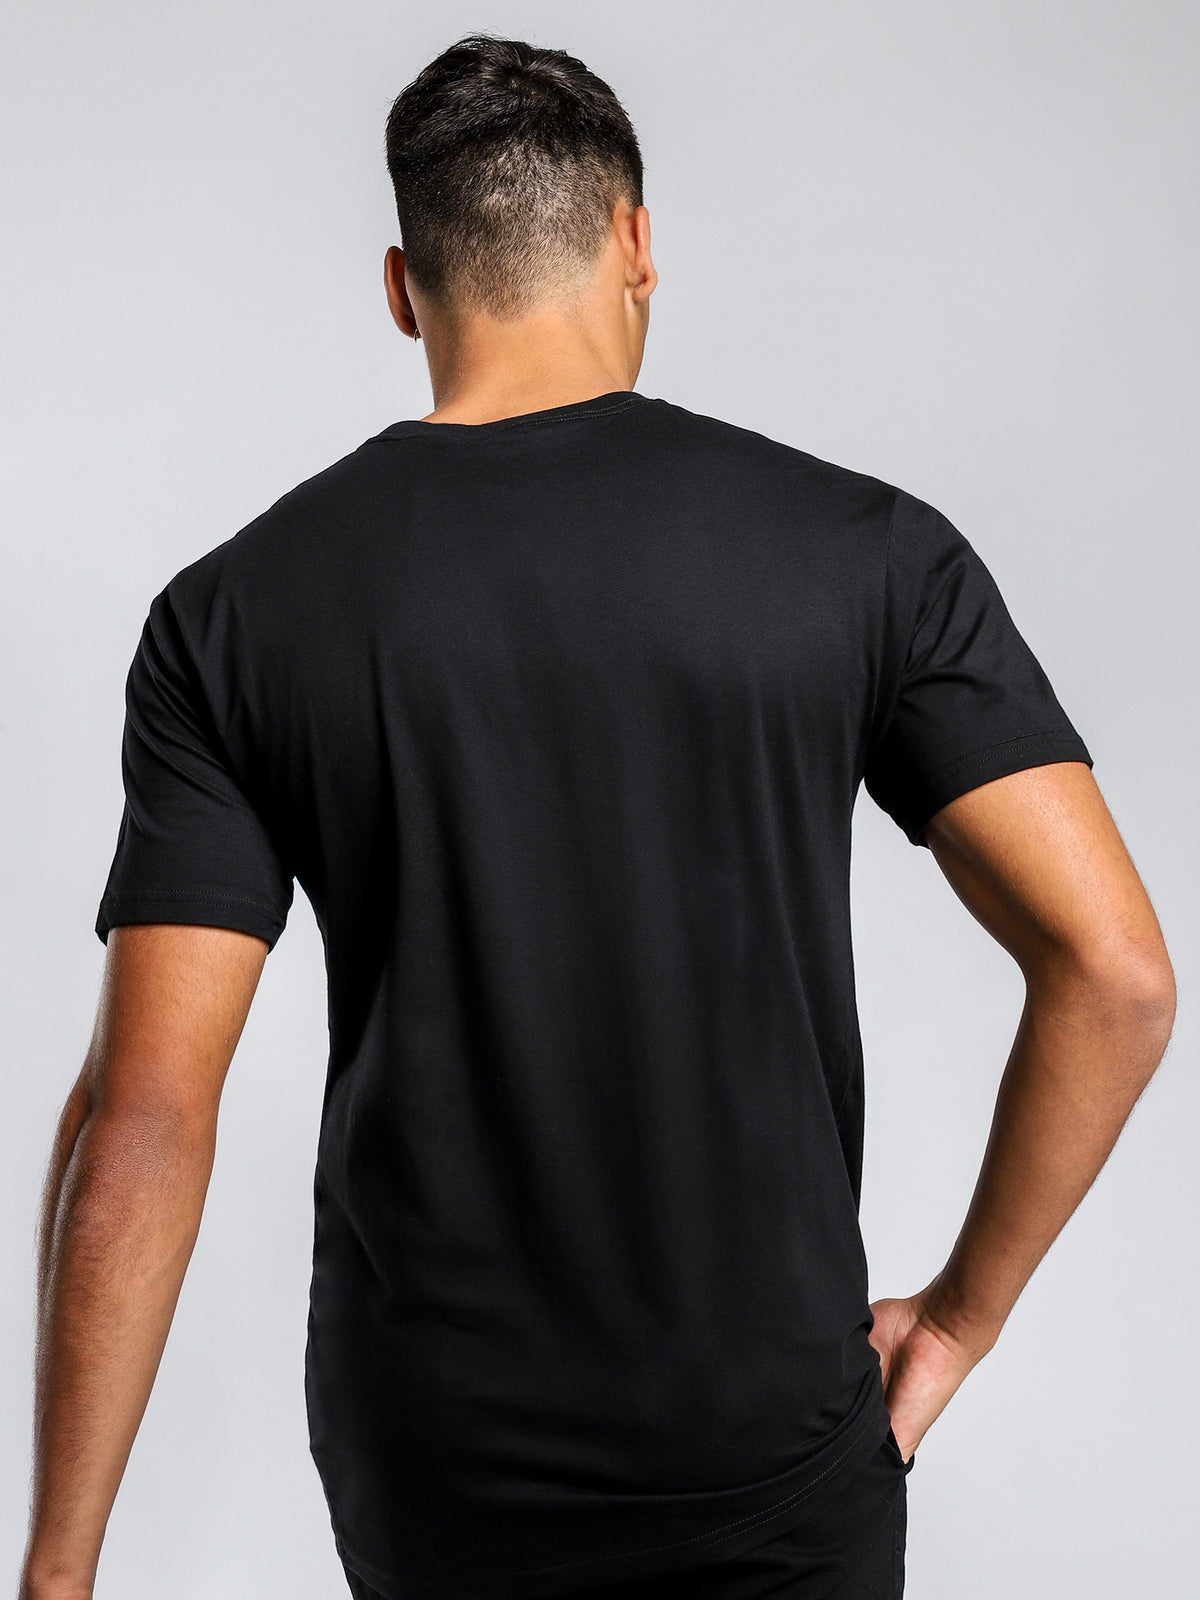 Princeton T-Shirt in Black